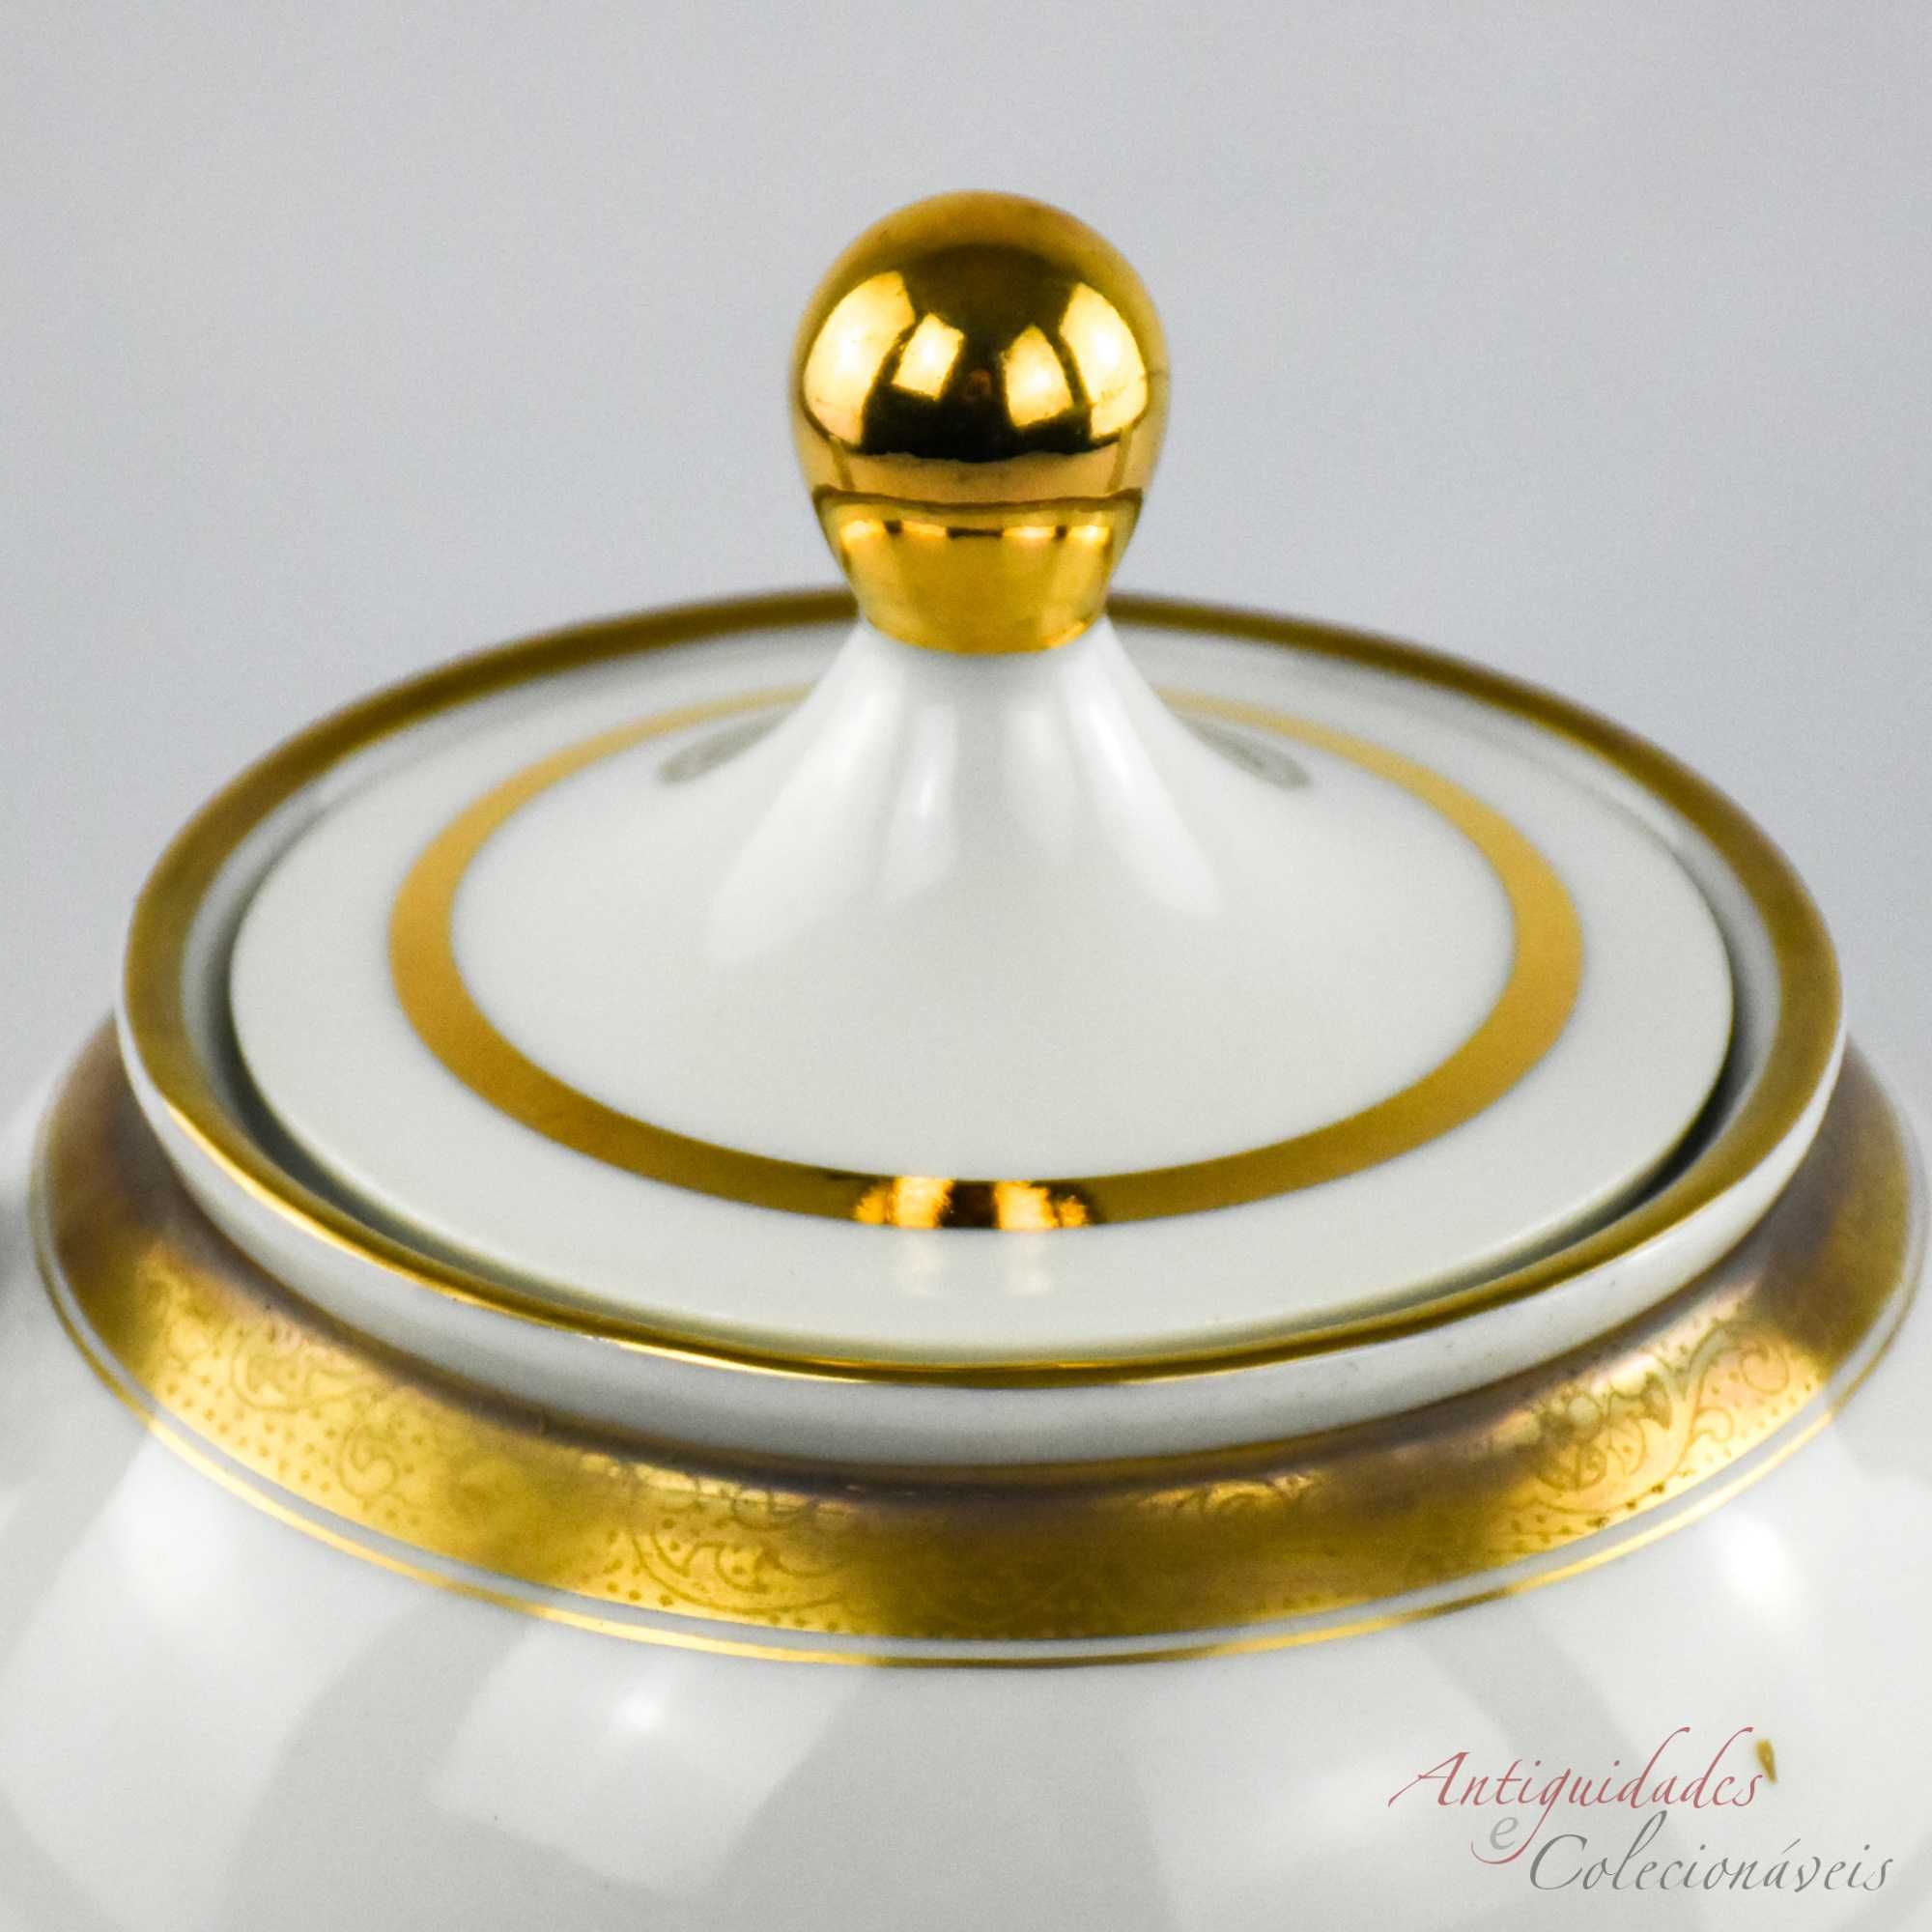 Bule porcelana Artibus decorado a ouro